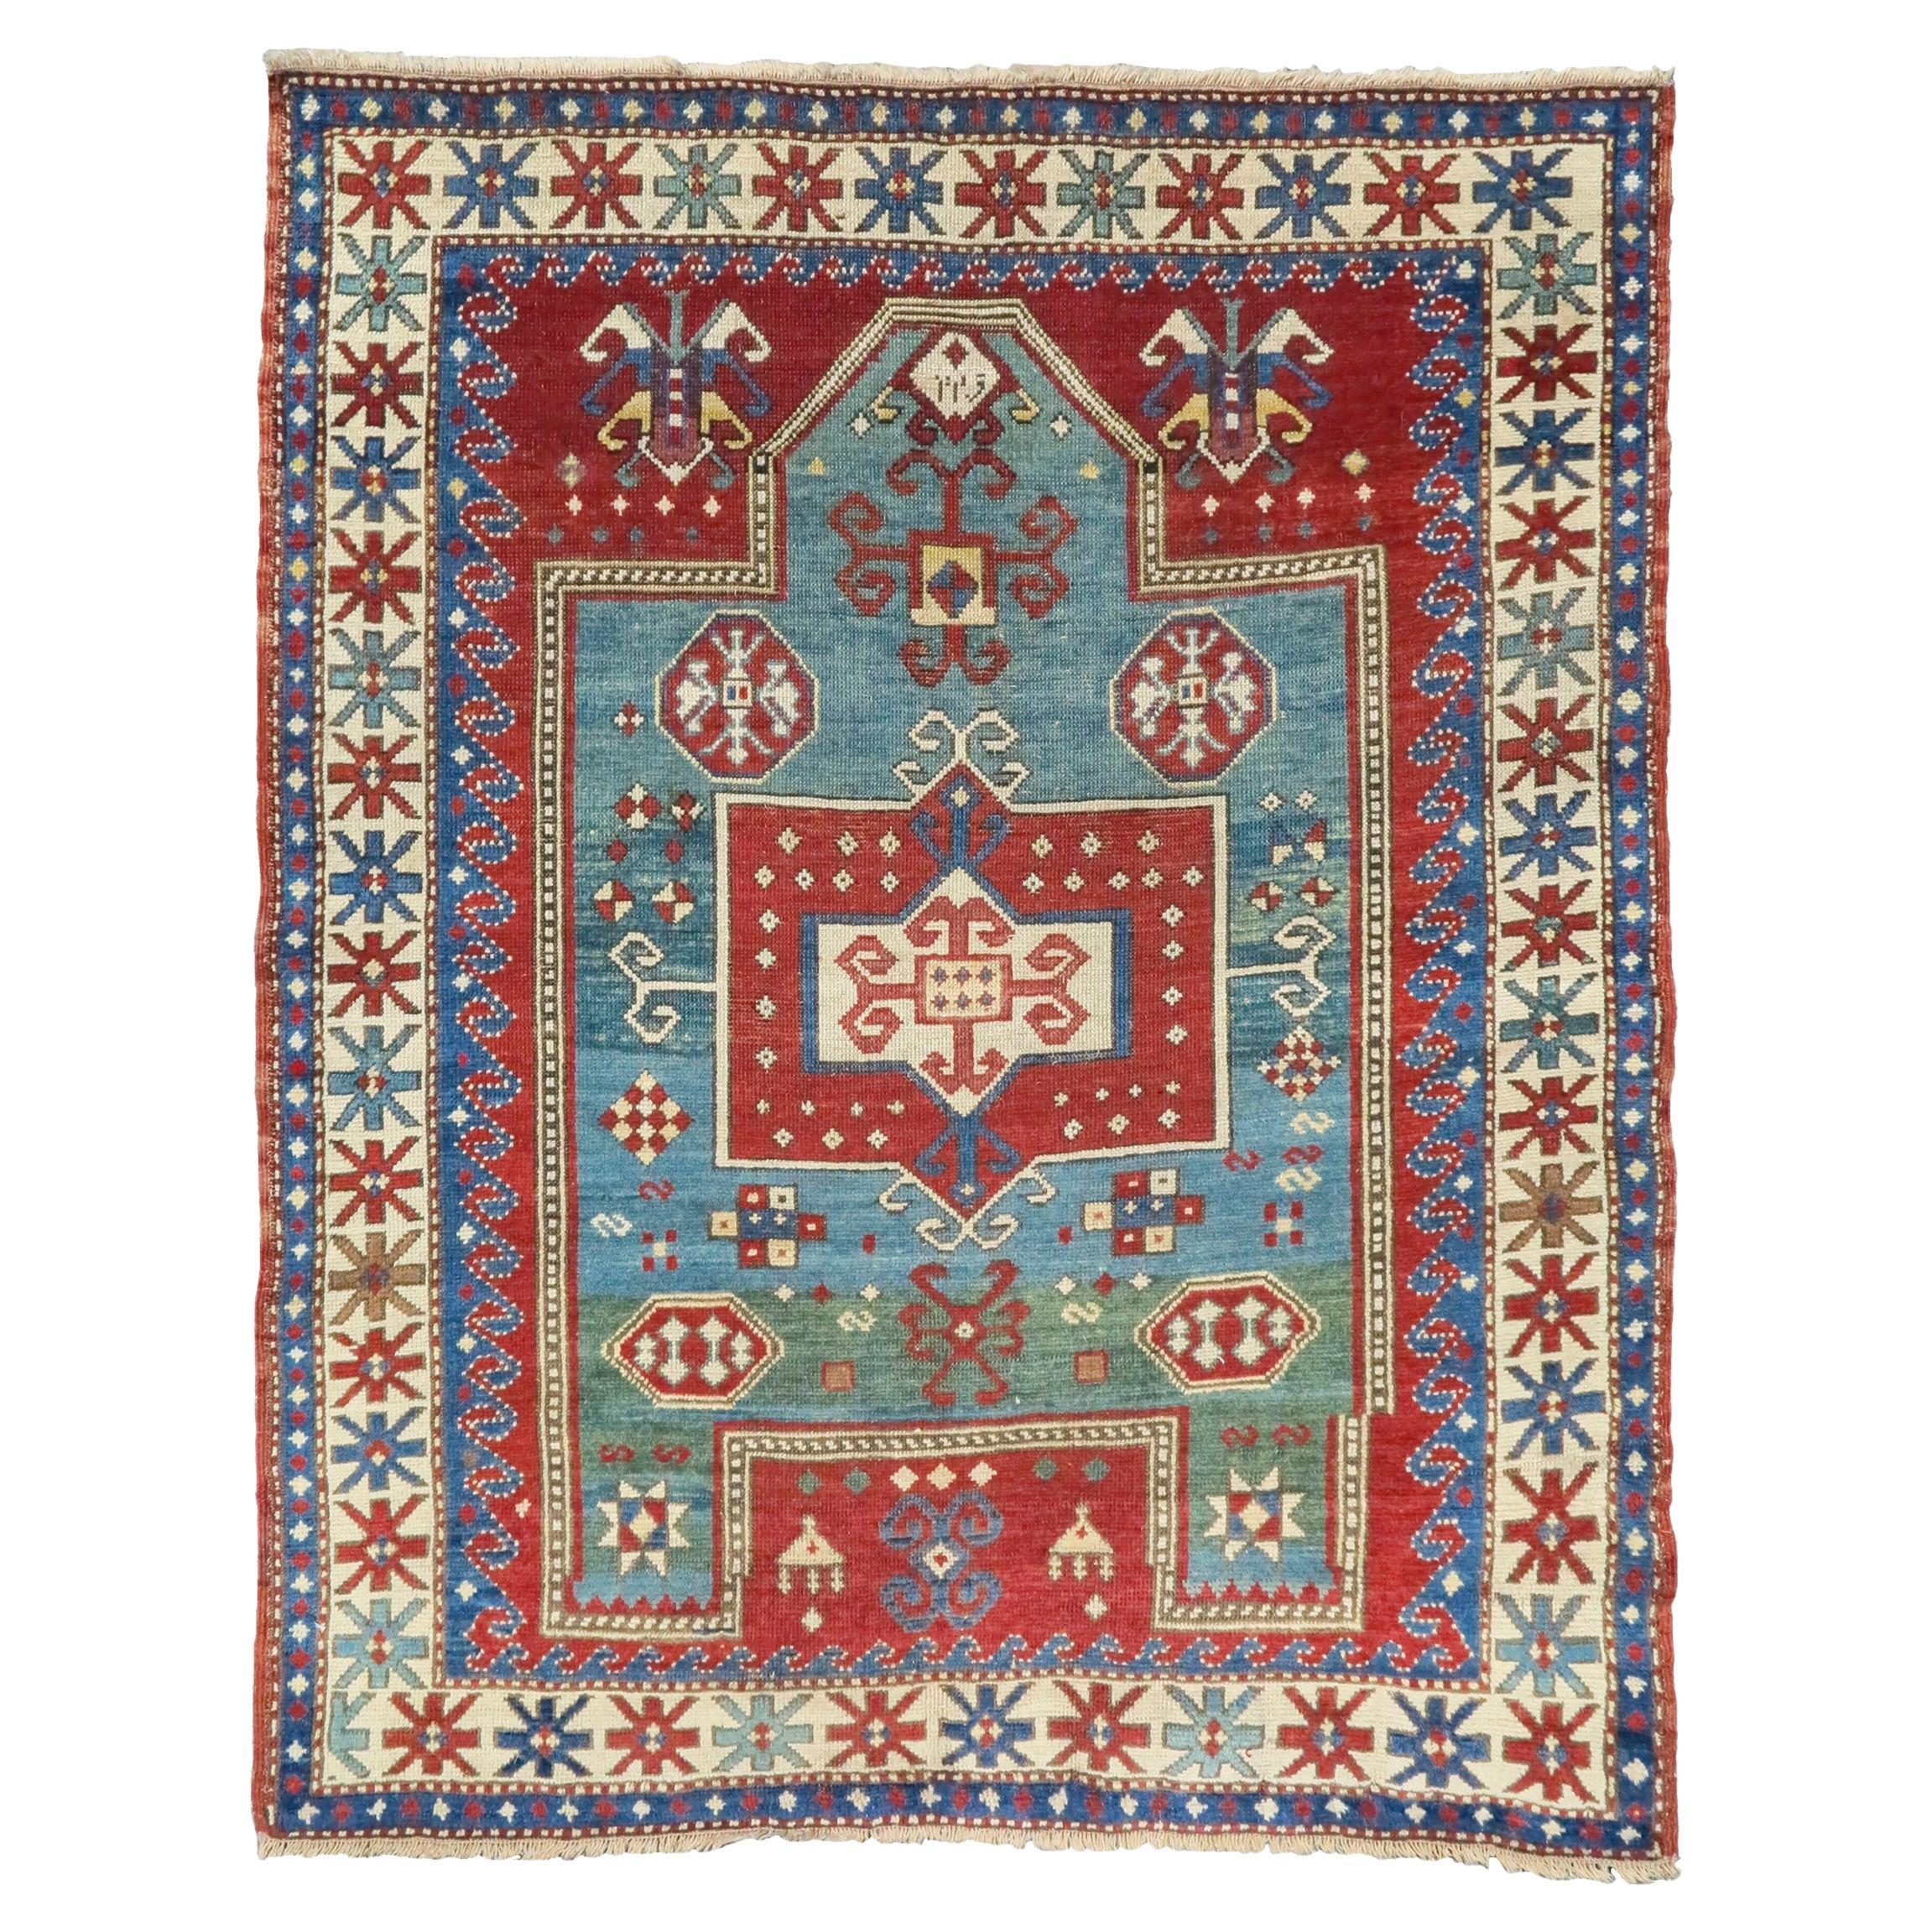 Antique Caucasian Fachralo Kazak Prayer Rug, 19th Century